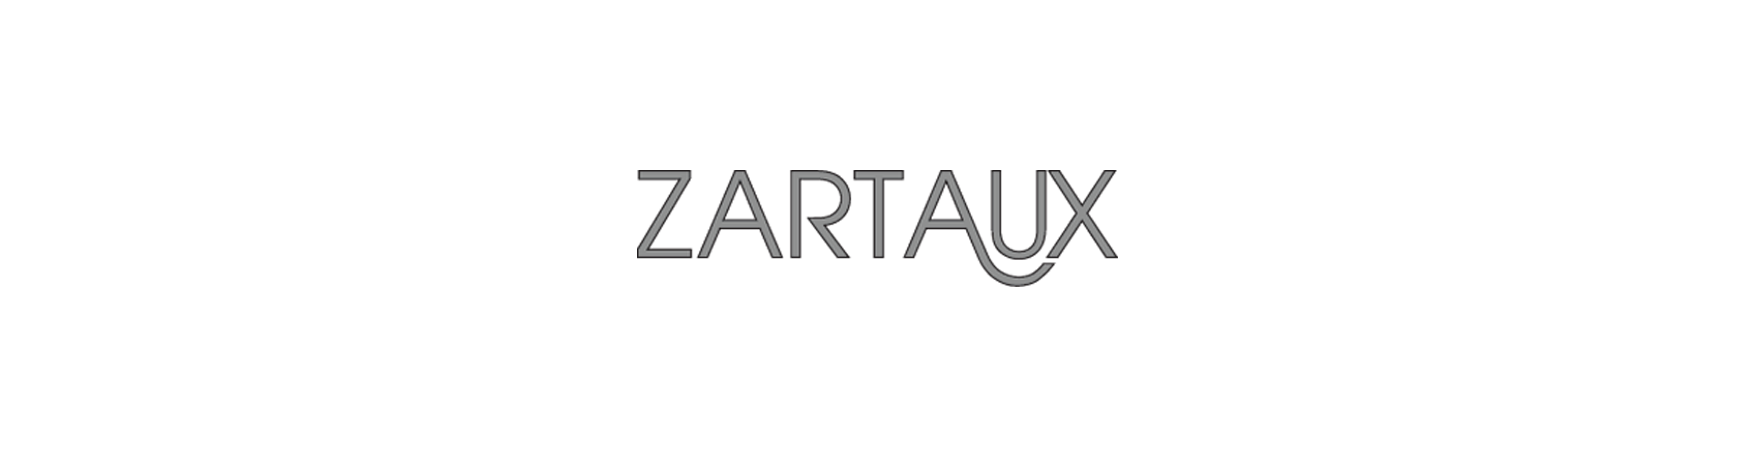 Zartaux